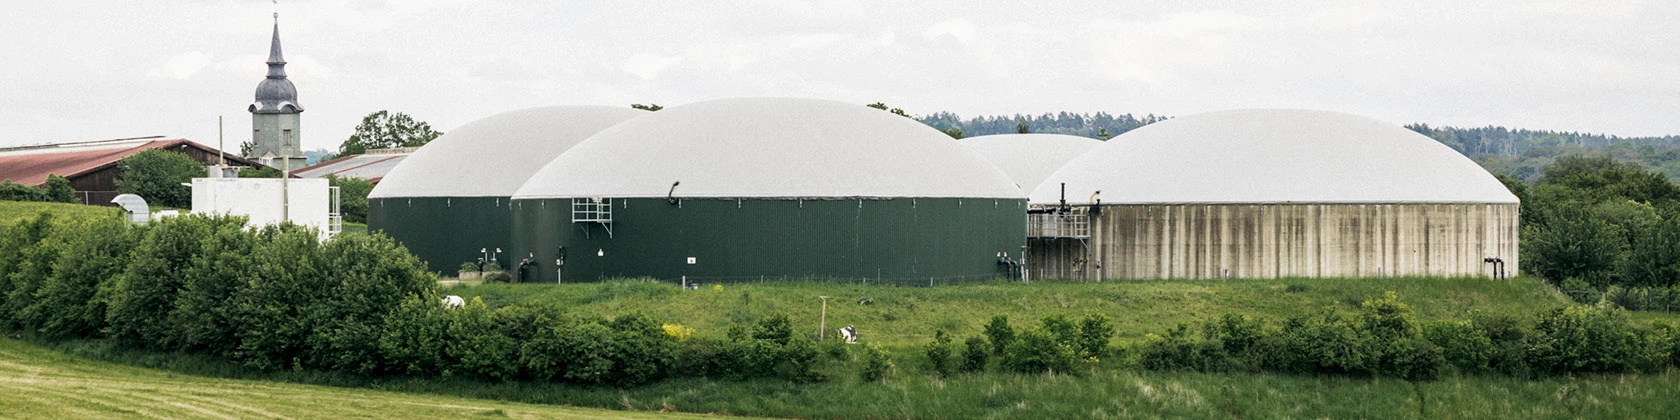 Biogasanlage inmitten von Feldern